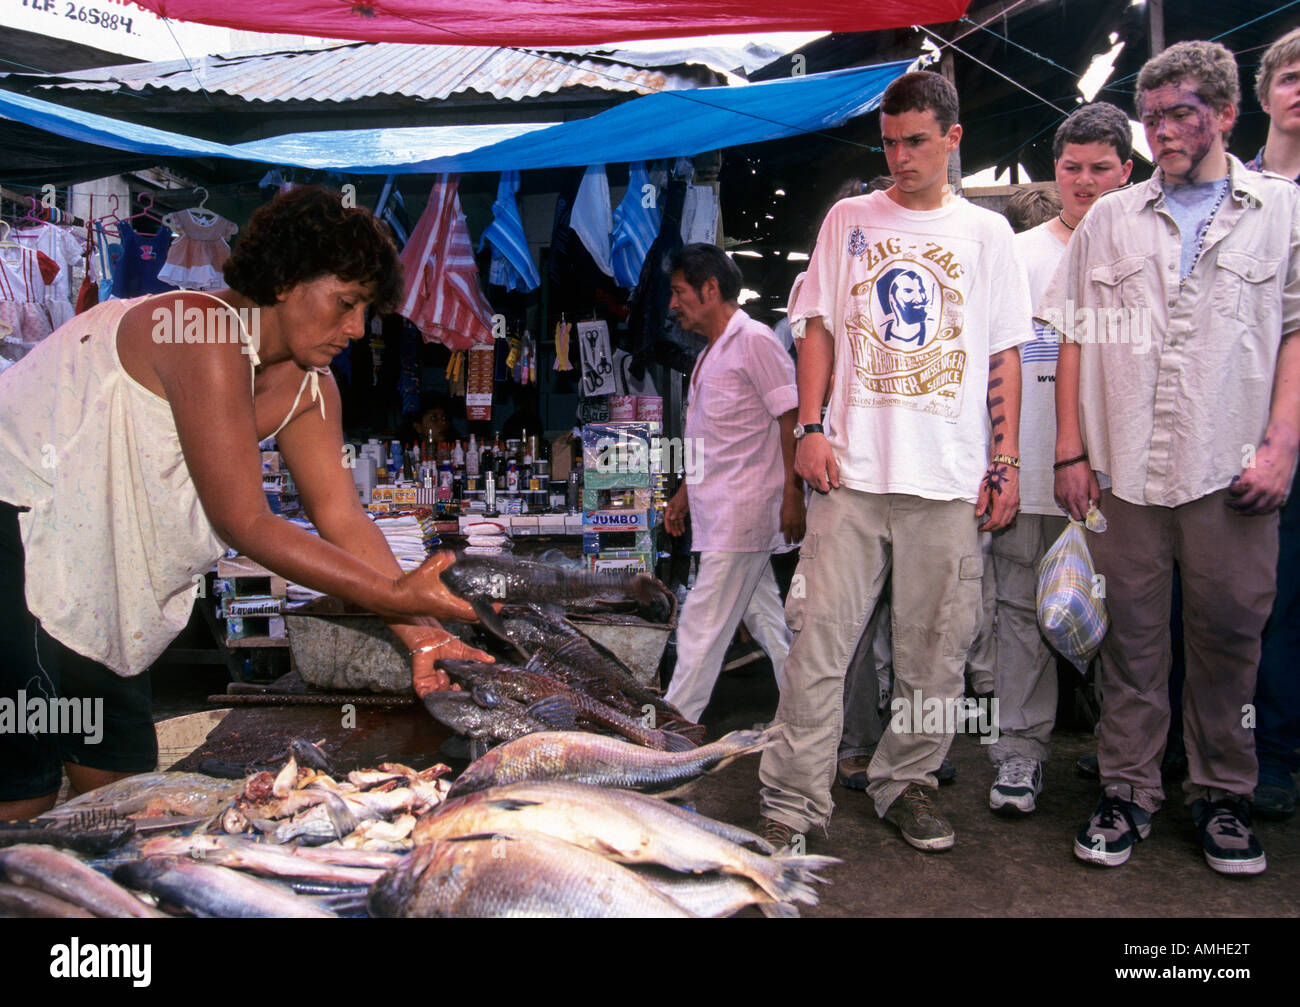 Amerikanische High-School-Schüler besuchen Markt Iquitos in Peru. Stockfoto